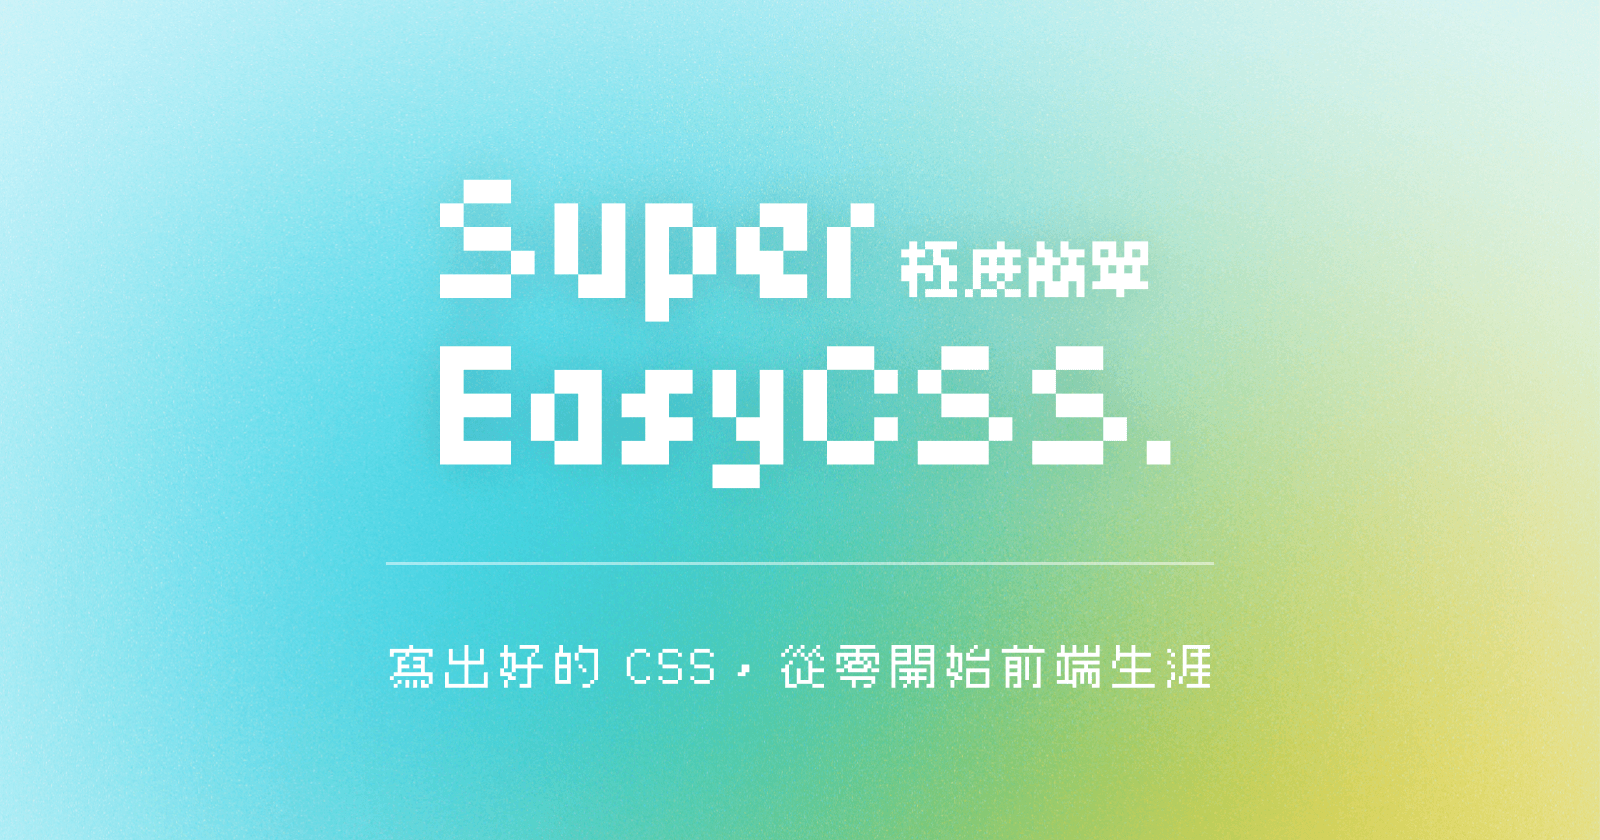 Super Easy CSS